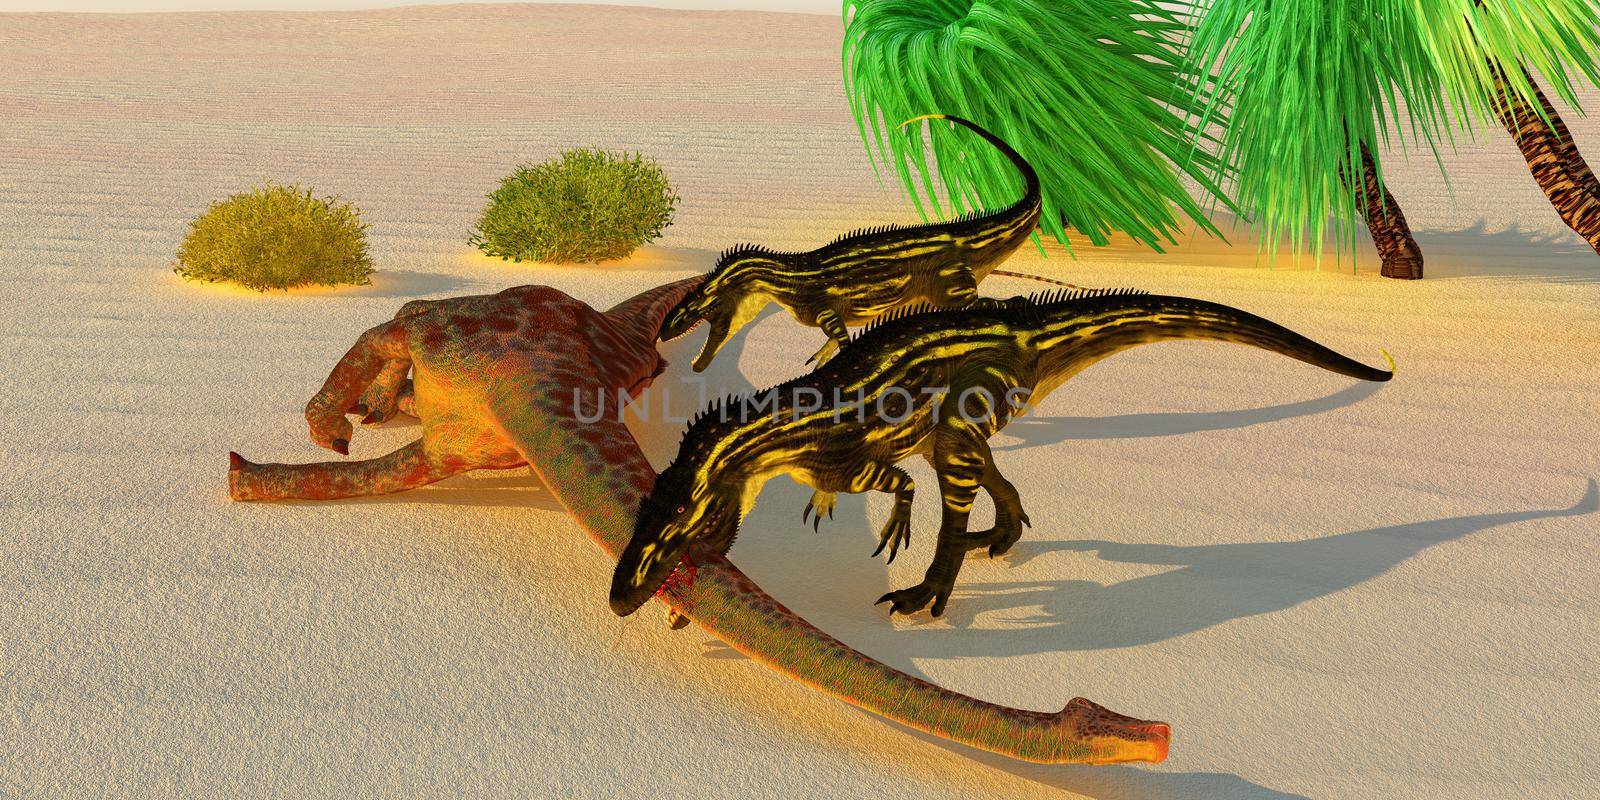 Torvosaurus attacks Diplodocus by Catmando